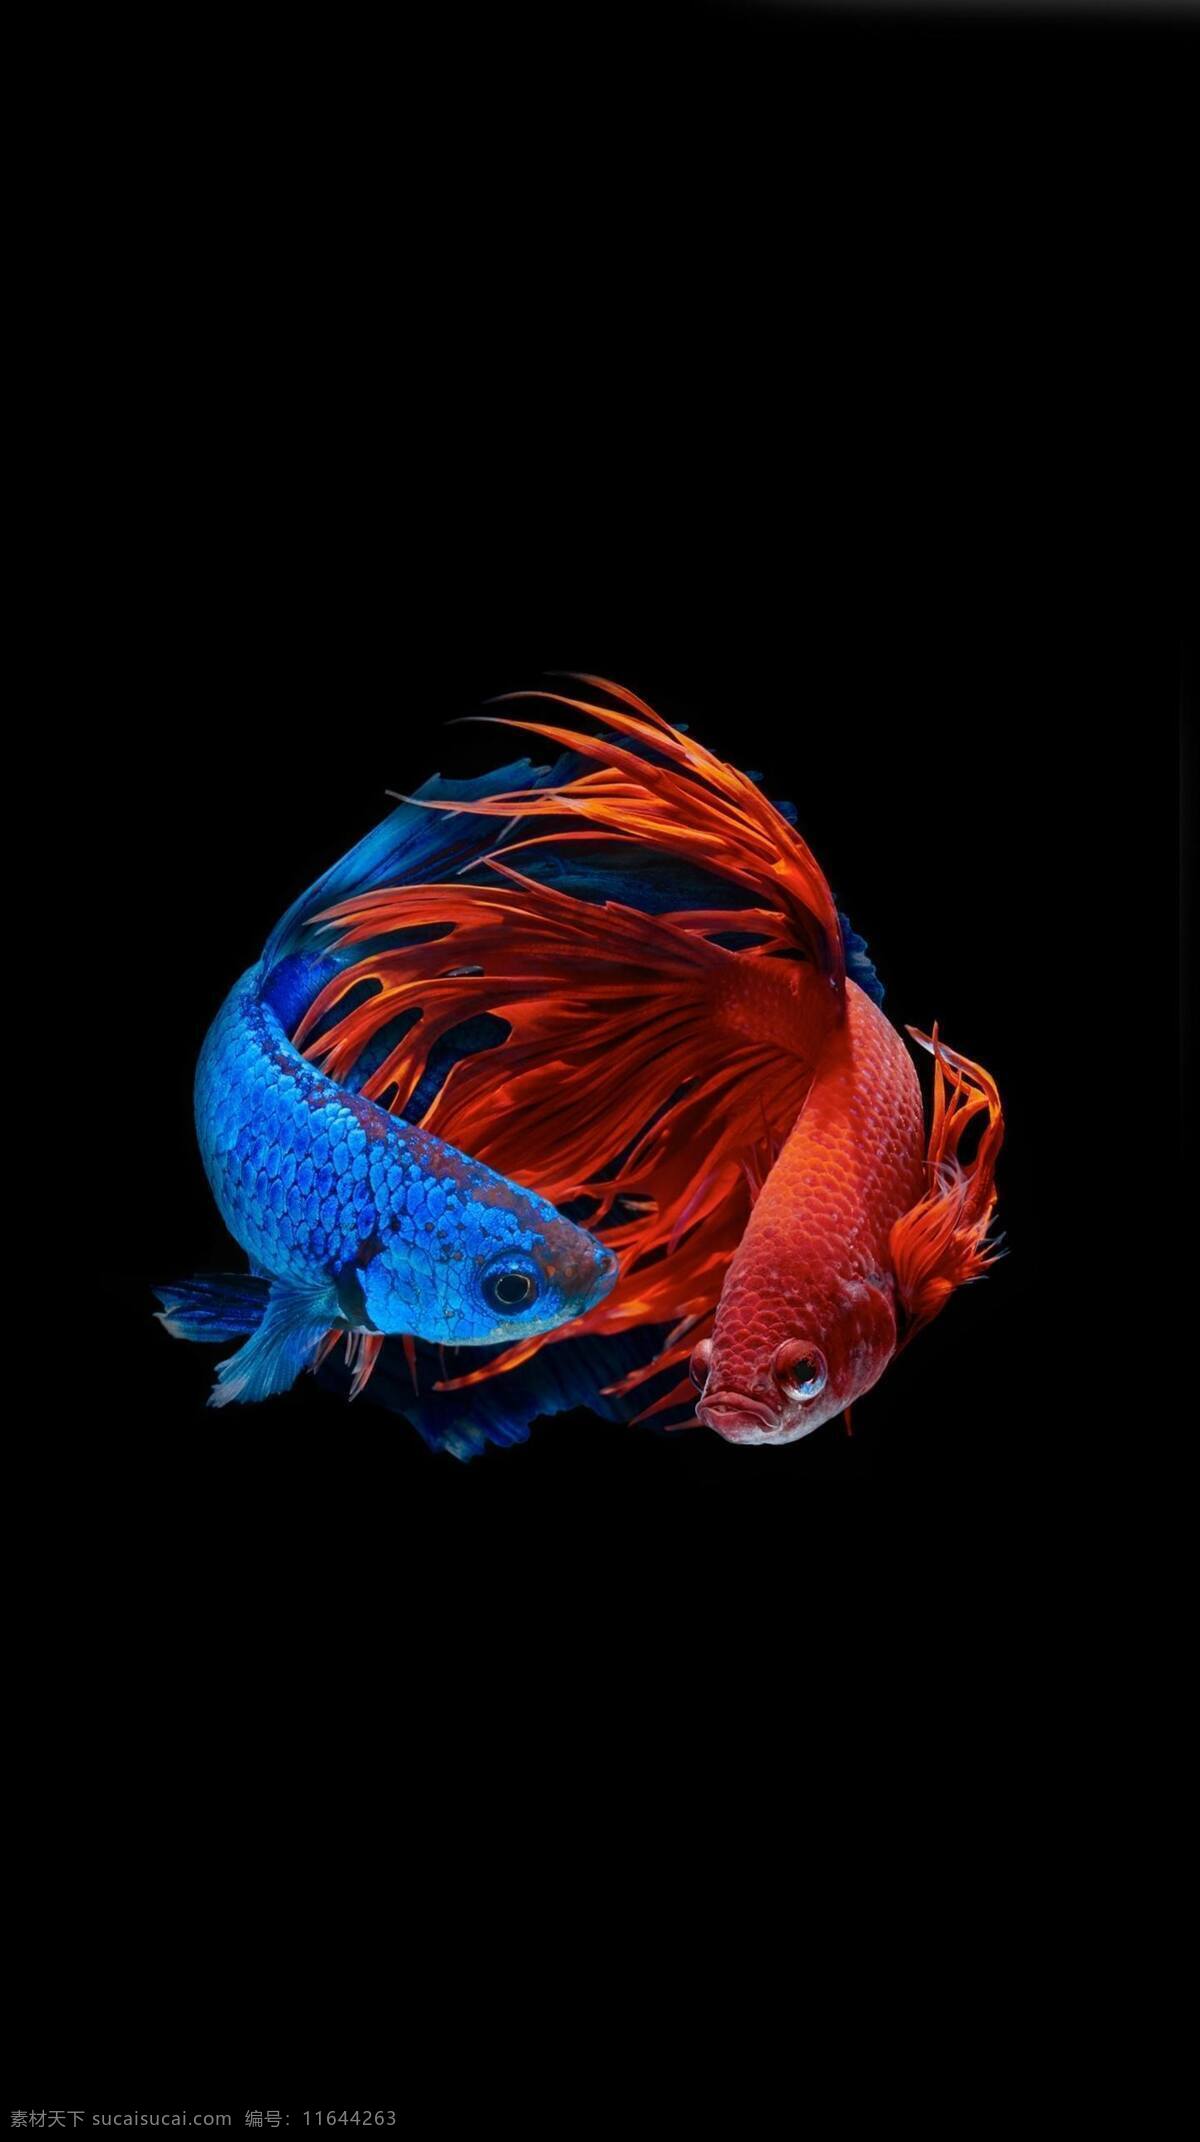 孔雀鱼 热带鱼 彩色 缤纷 动物 鱼 斗鱼